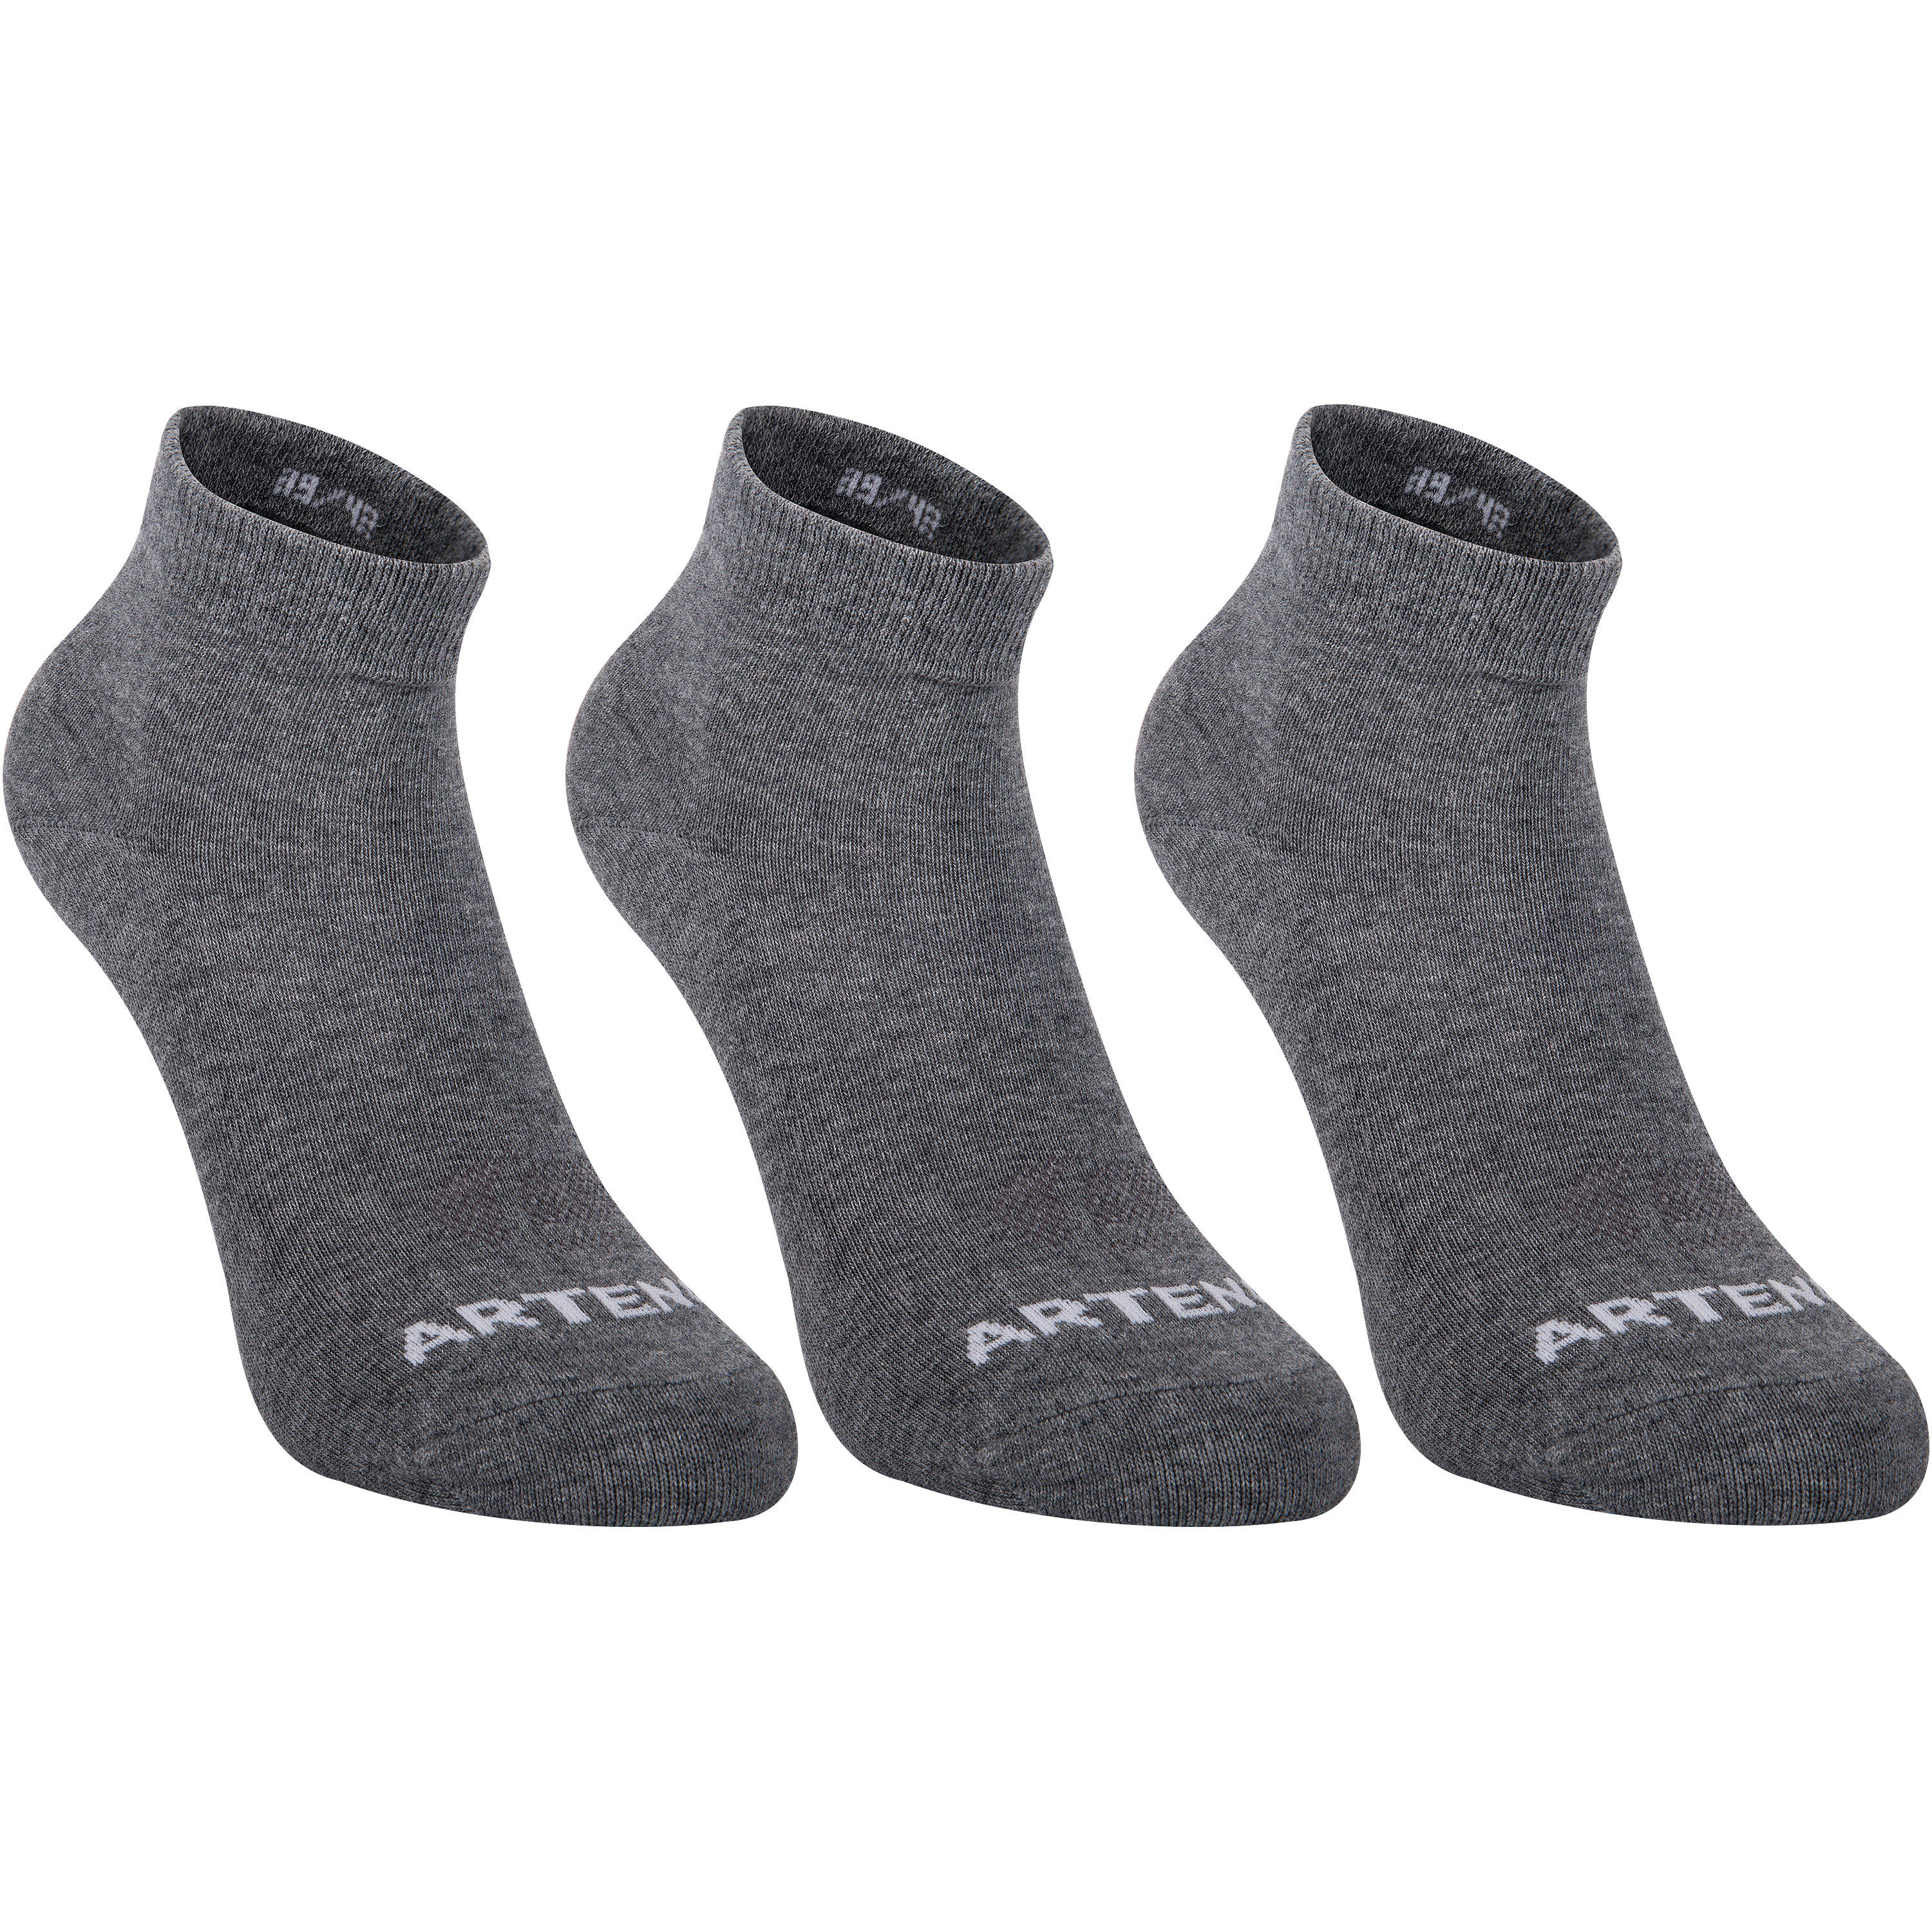 ARTENGO RS 160 Adult Mid Sports Socks Tri-Pack - Dark Grey